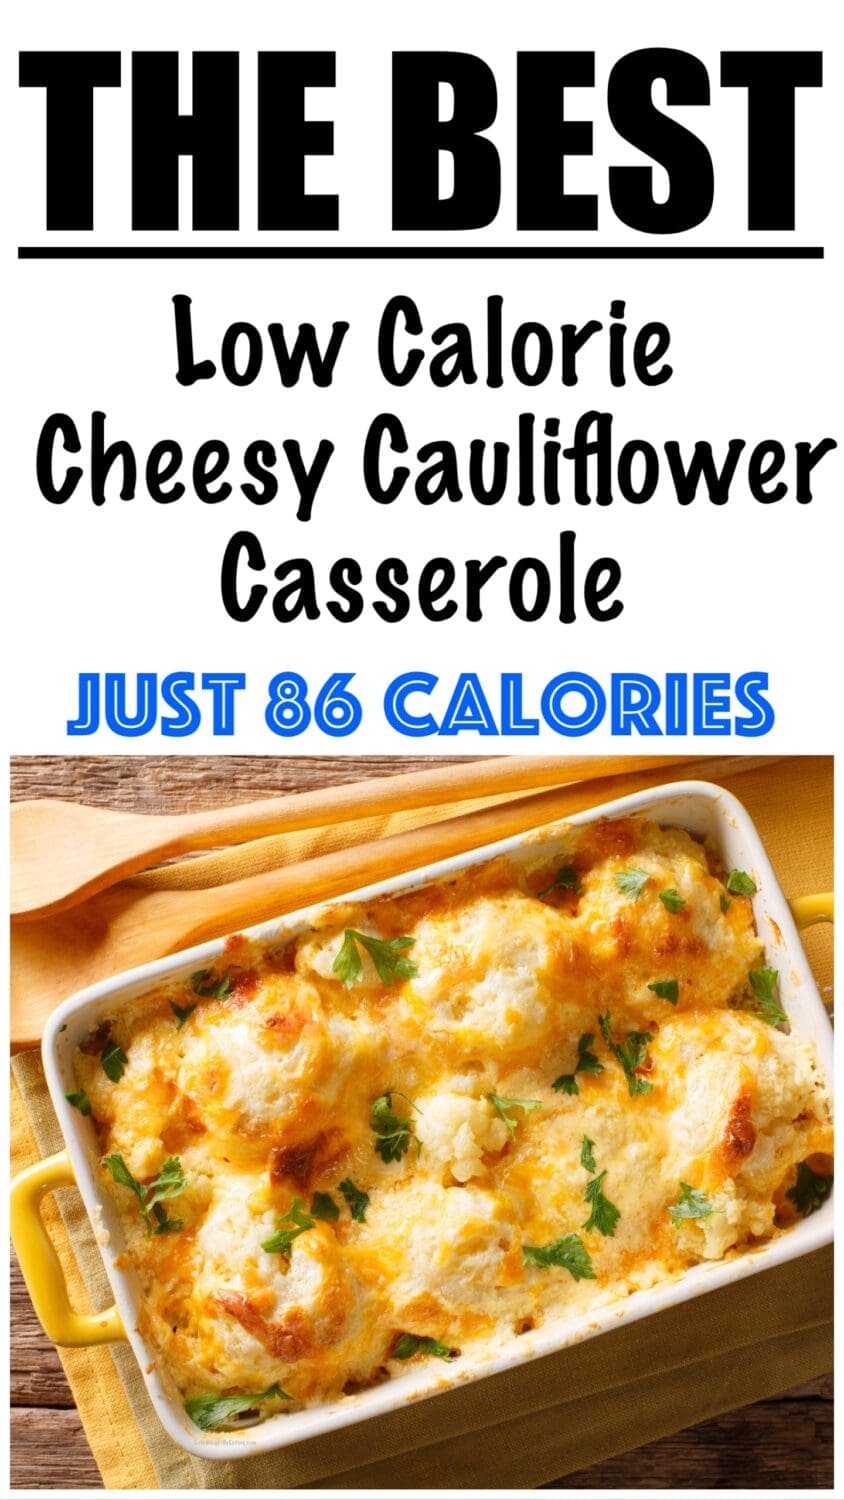 Healthy Cheesy Cauliflower Casserole